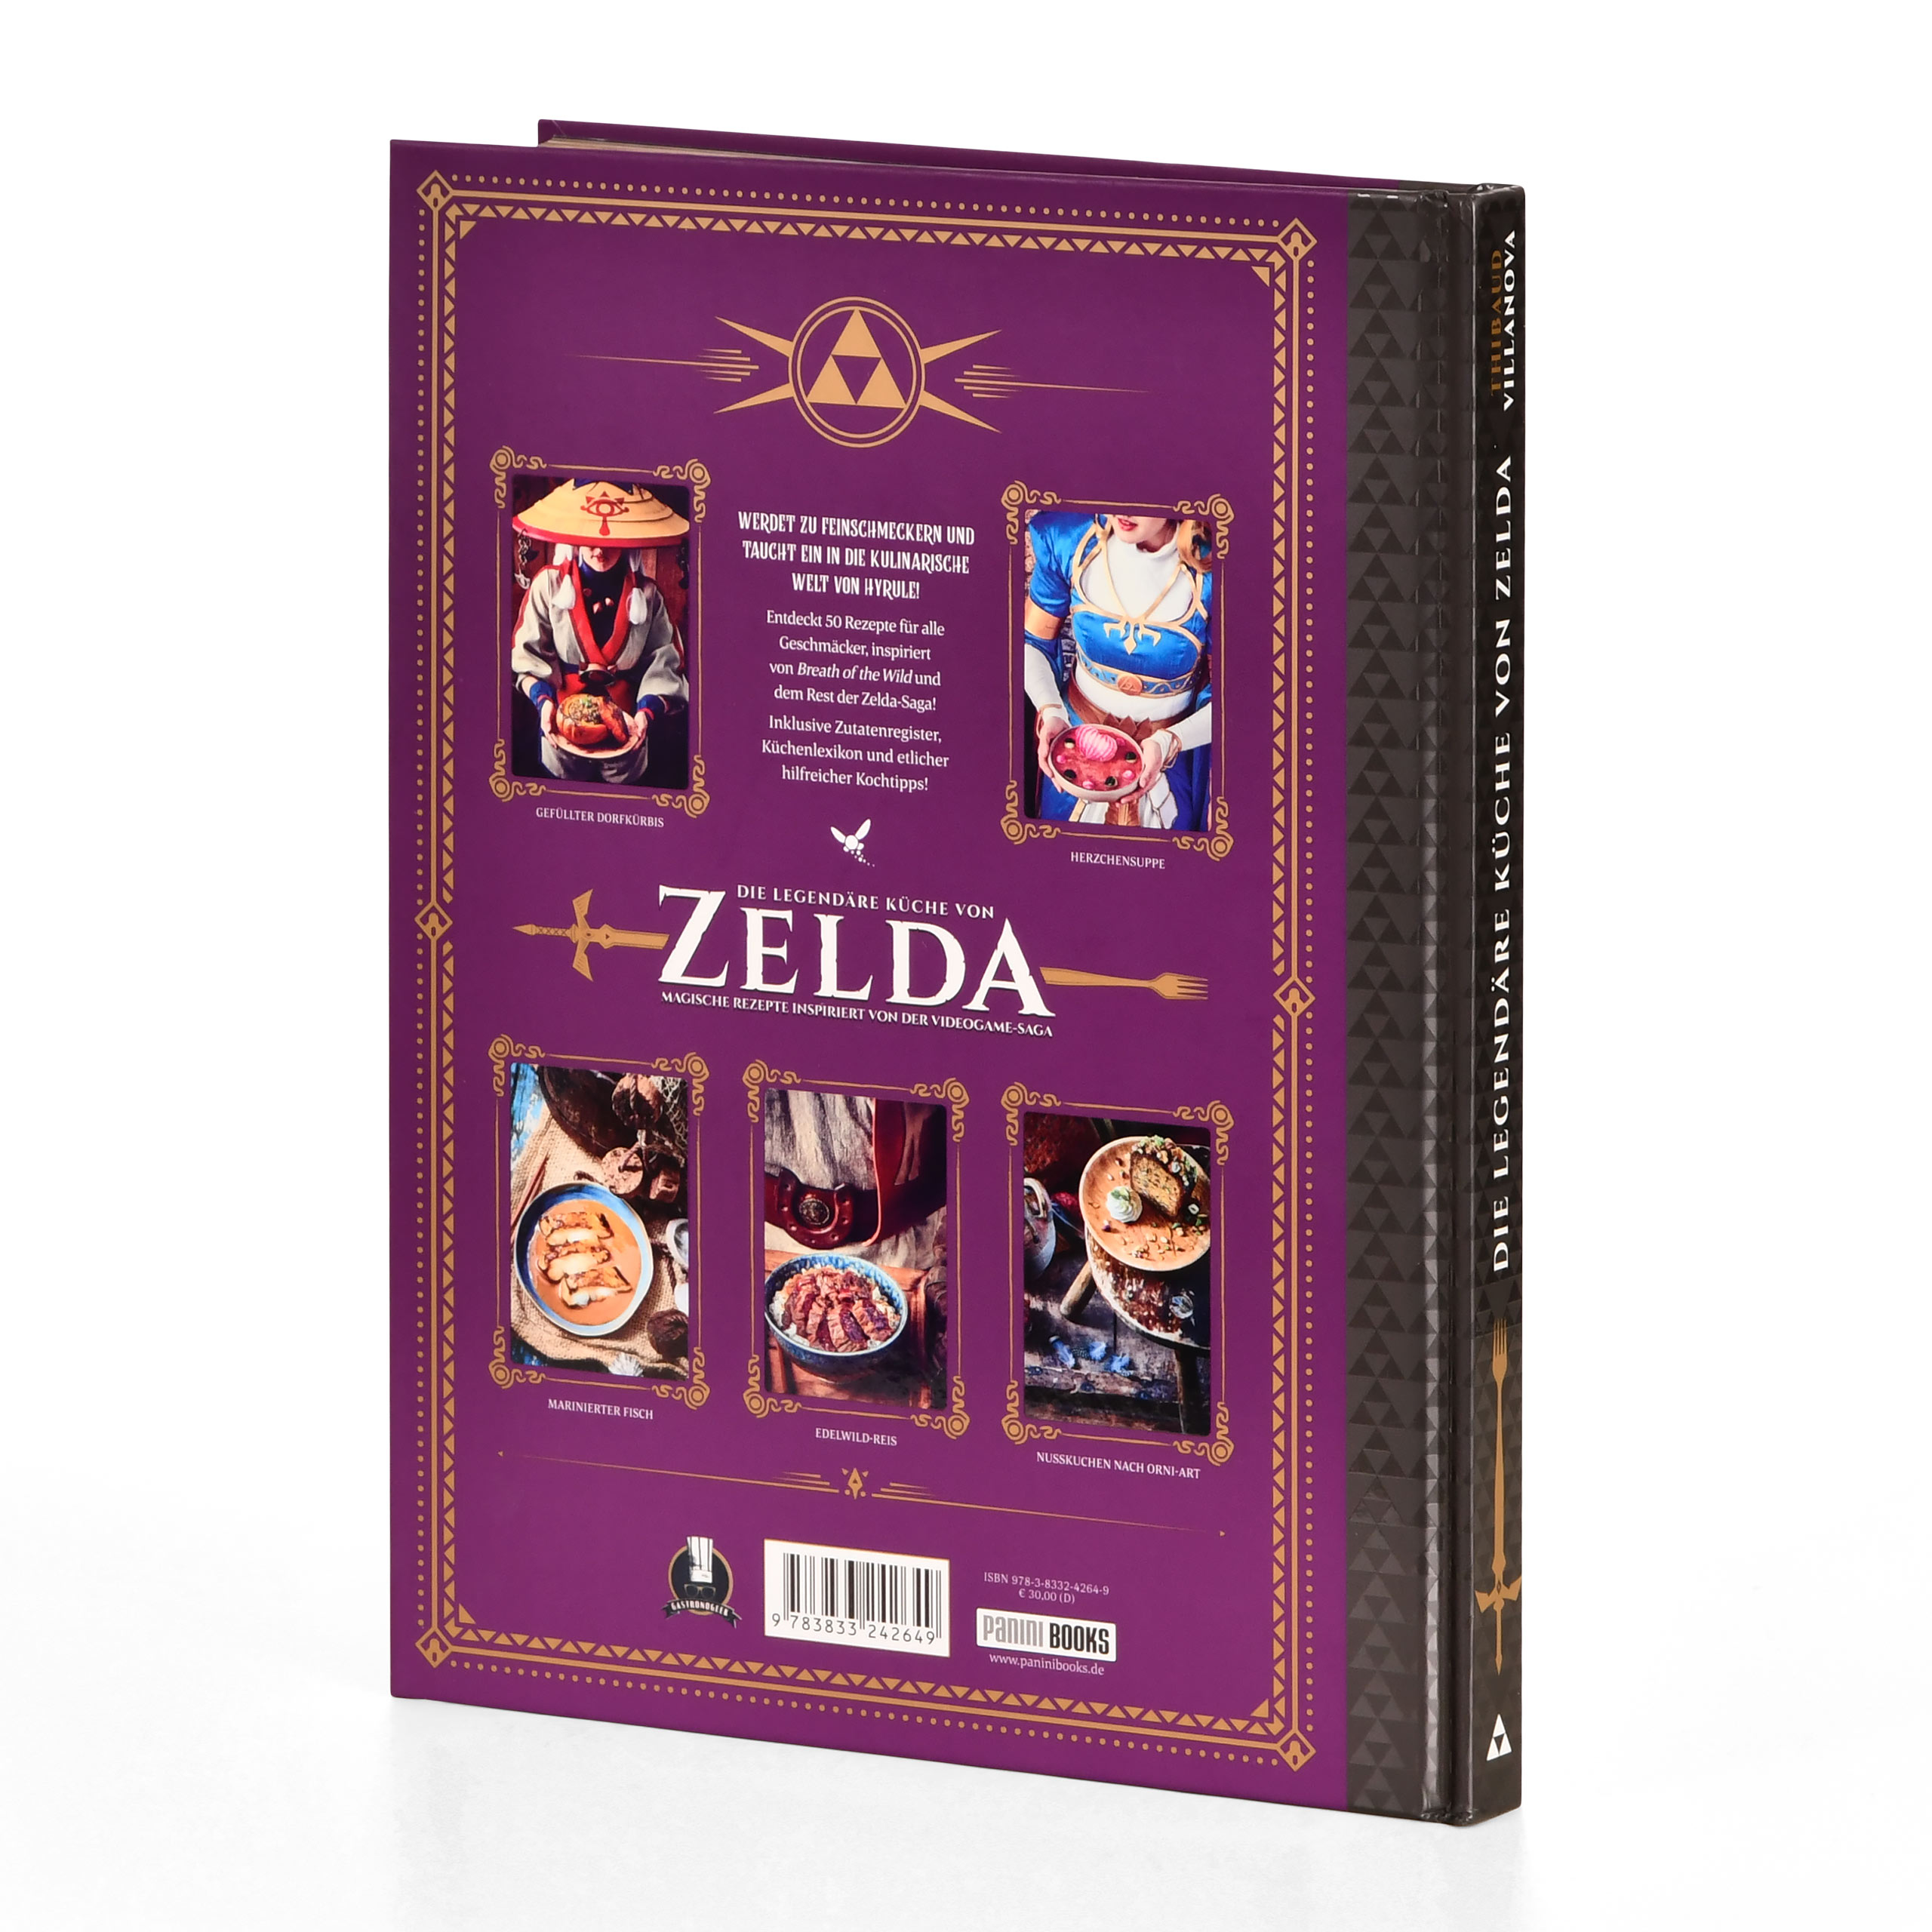 The Legendary Cuisine of Zelda - Cookbook